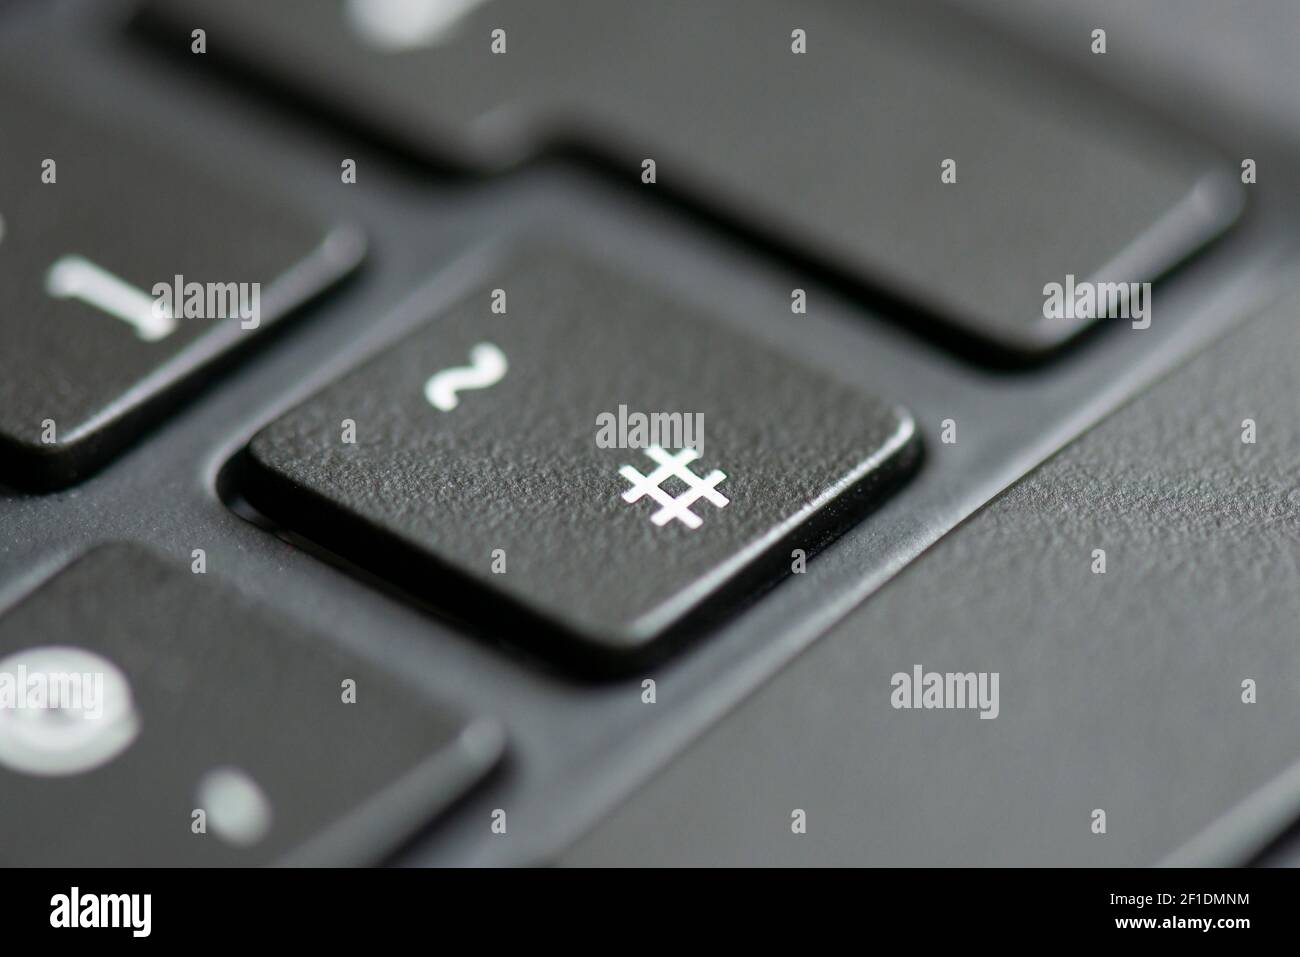 Die Raute- und Tilde-Taste auf einer Laptop-Tastatur Stockfotografie - Alamy